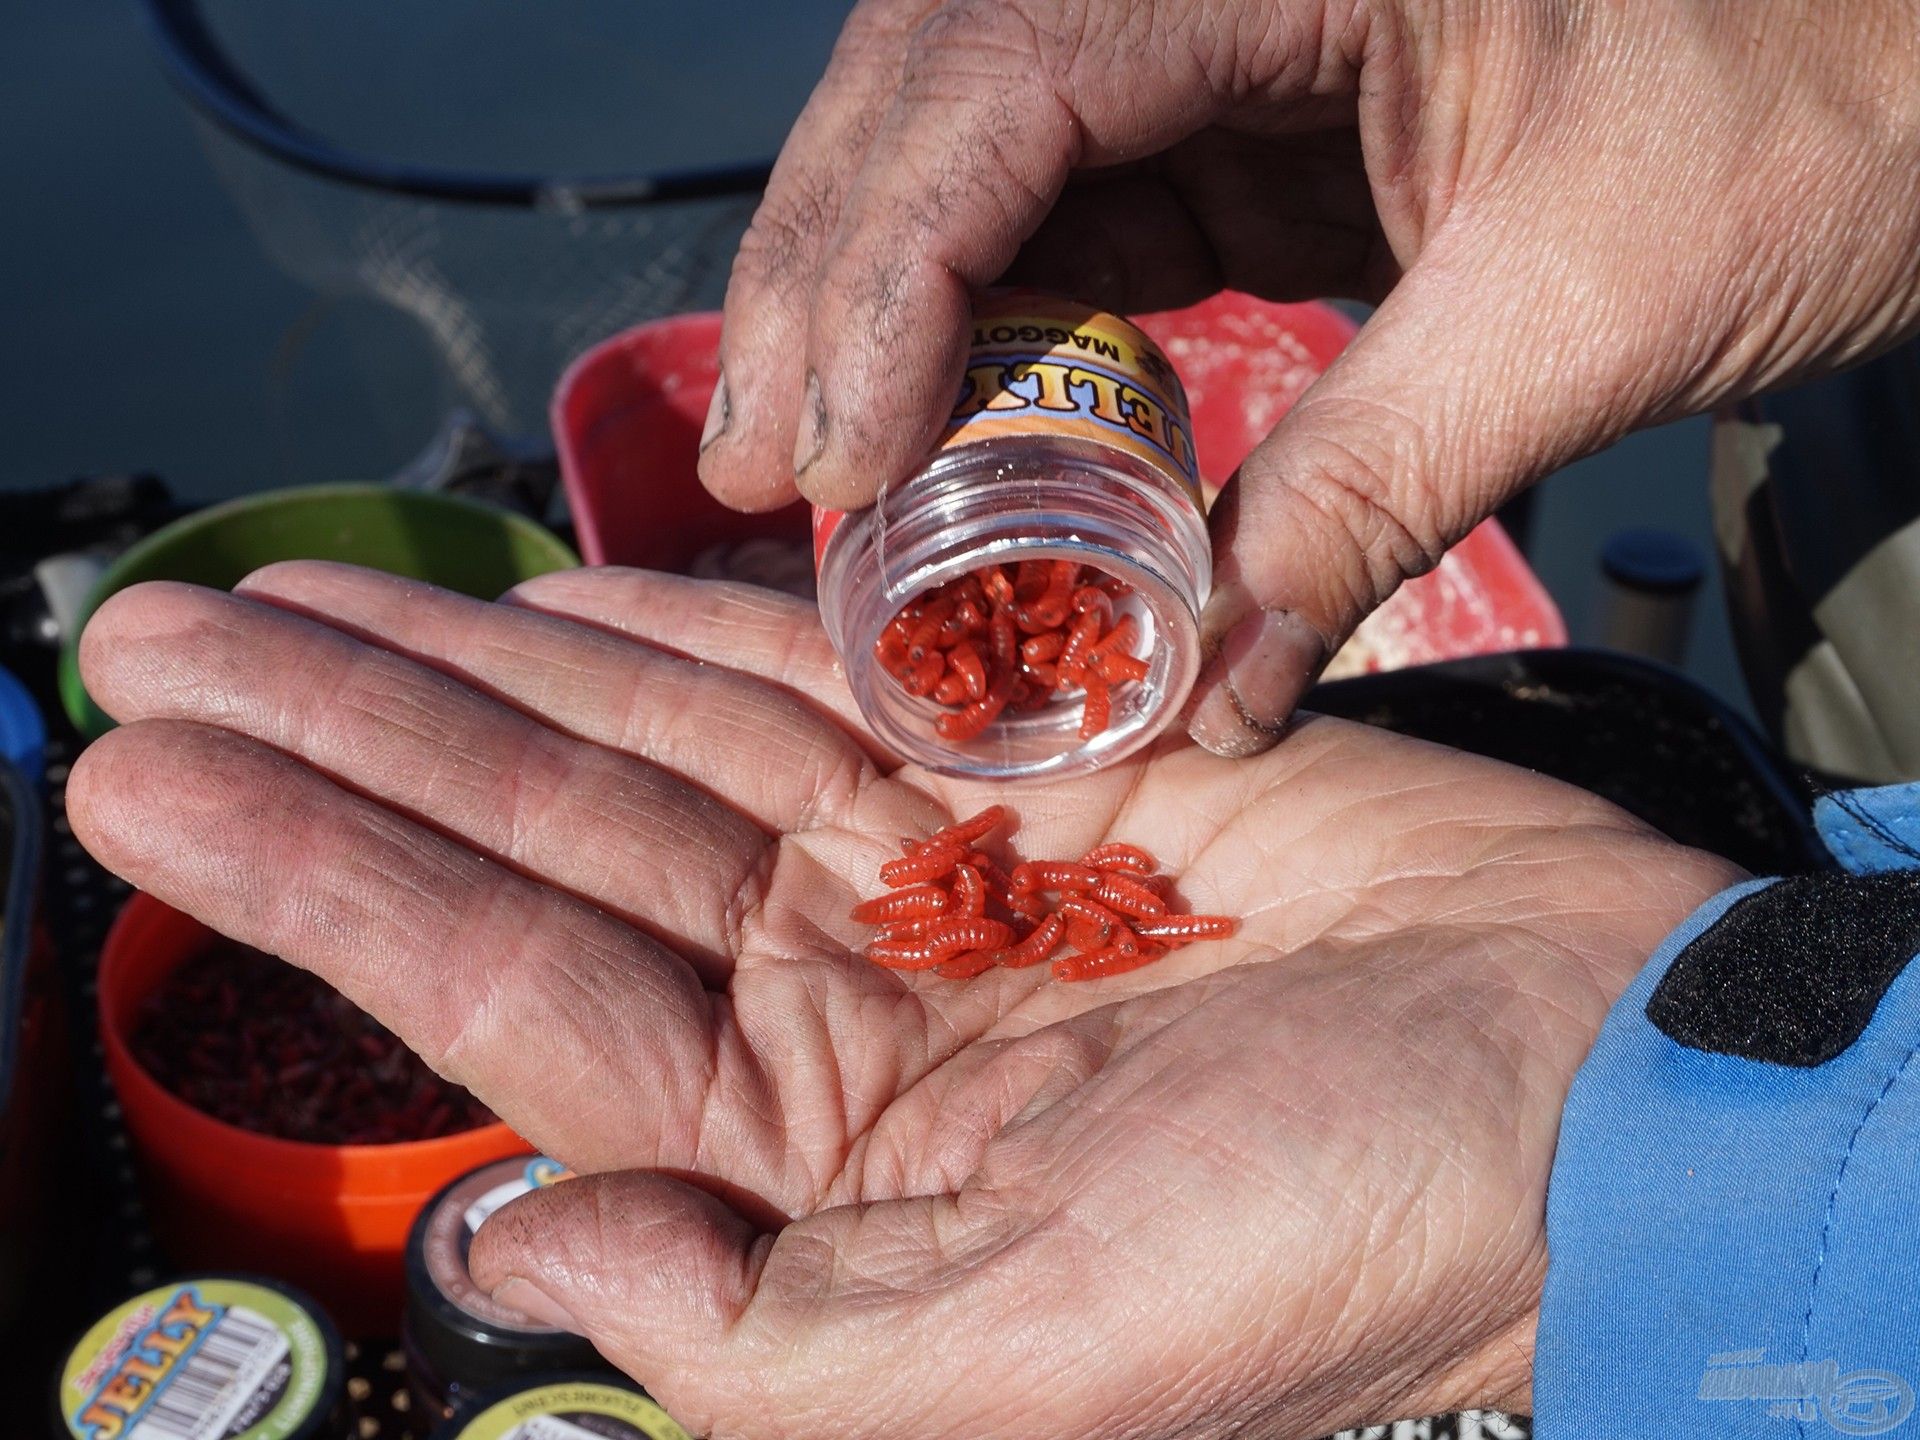 Az egyik kedvencem, a piros Jelly csonti. A horgászboltokban gyakran kevés az élő között a piros, ezért is van nálam ebből mindig. Az egyik legjobb csali az egy fehér, egy piros kombináció